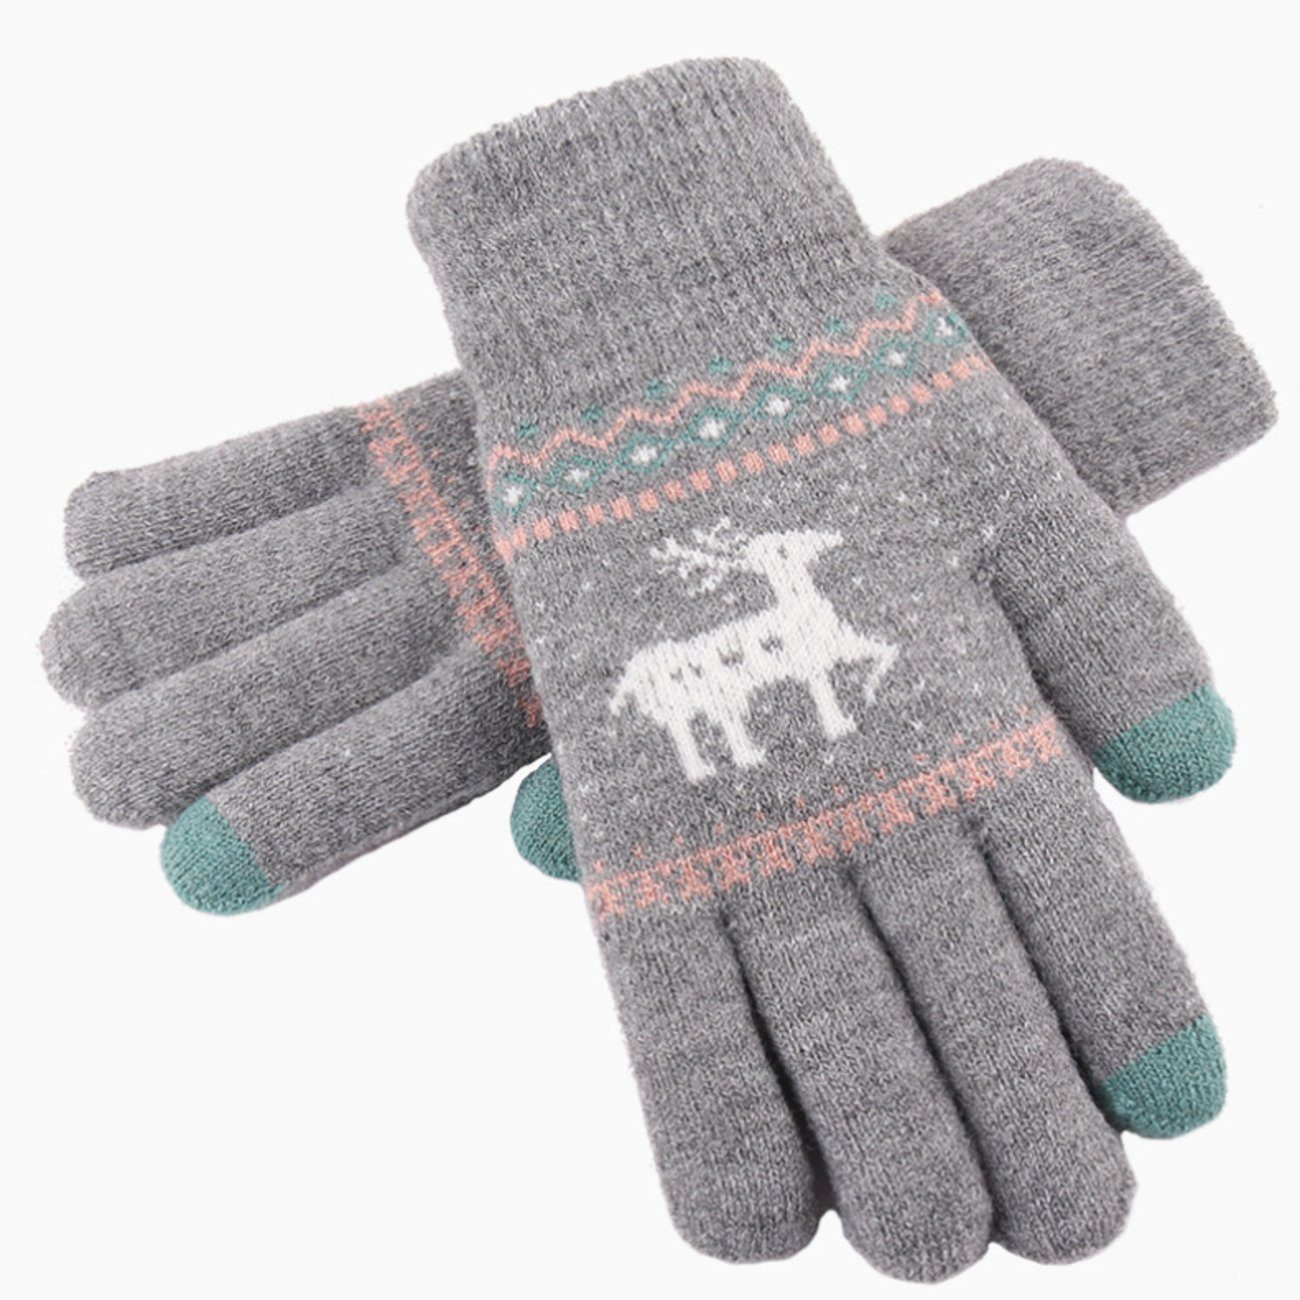 Union Reisen Strickhandschuhe Gestrickte warme Handschuhe für Herbst und Winter grau